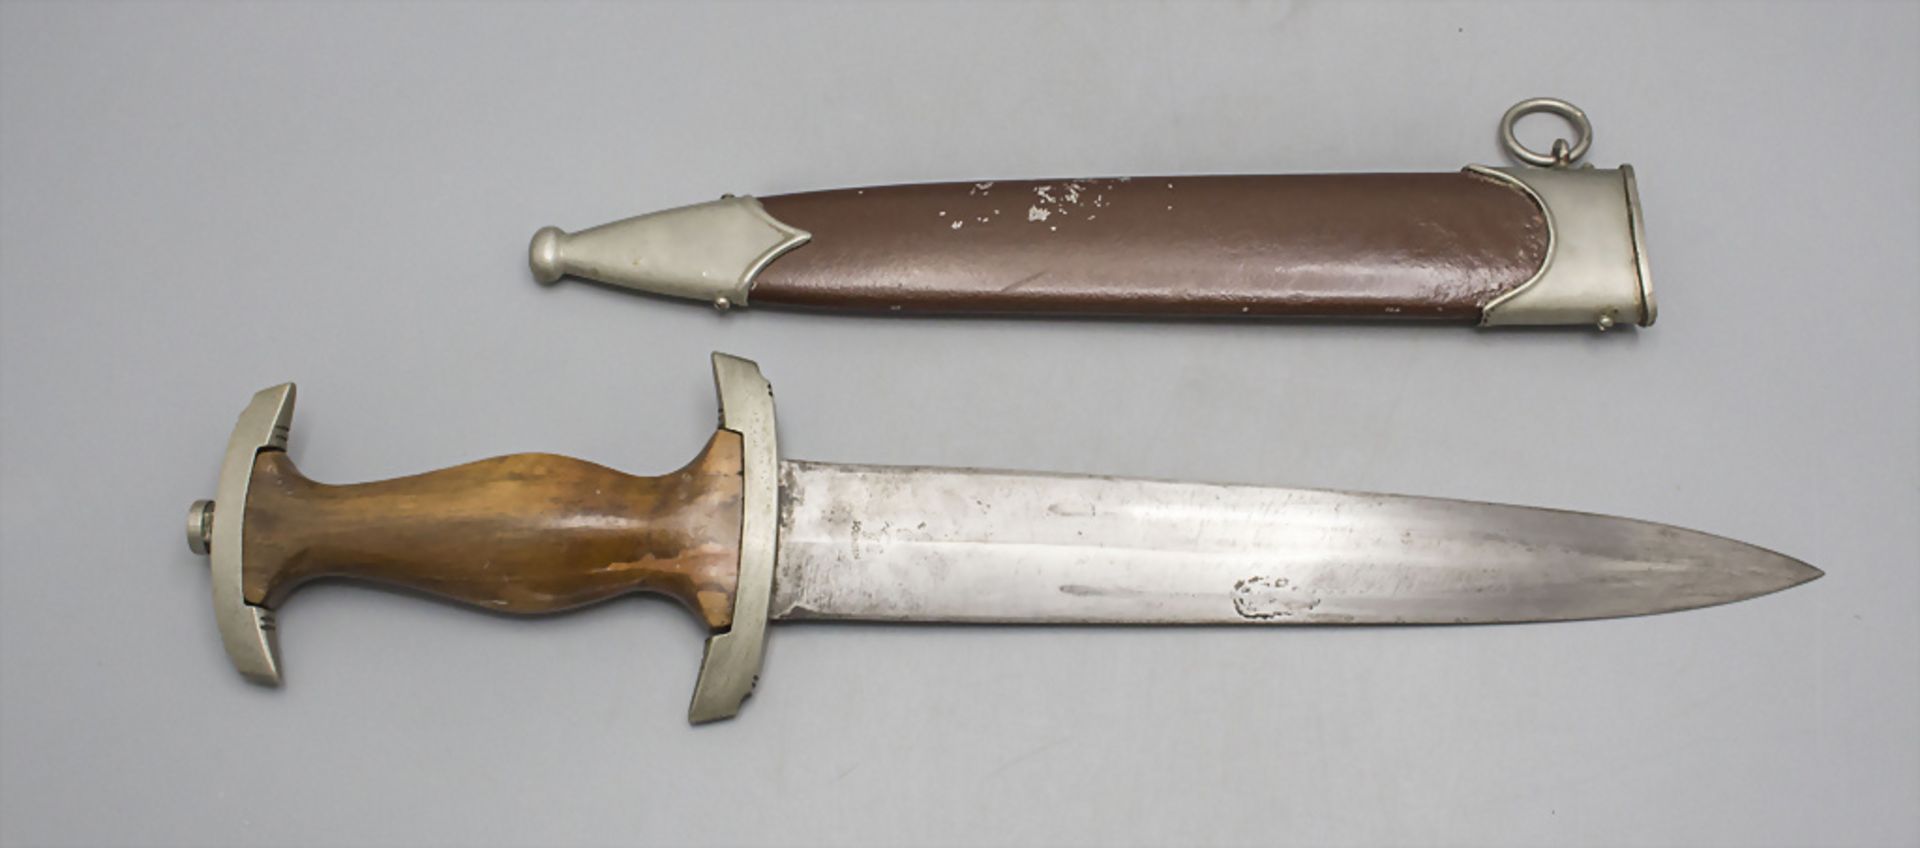 SA-Dolch Ex-Röhm / A SA dagger, Drittes Reich - Image 2 of 4